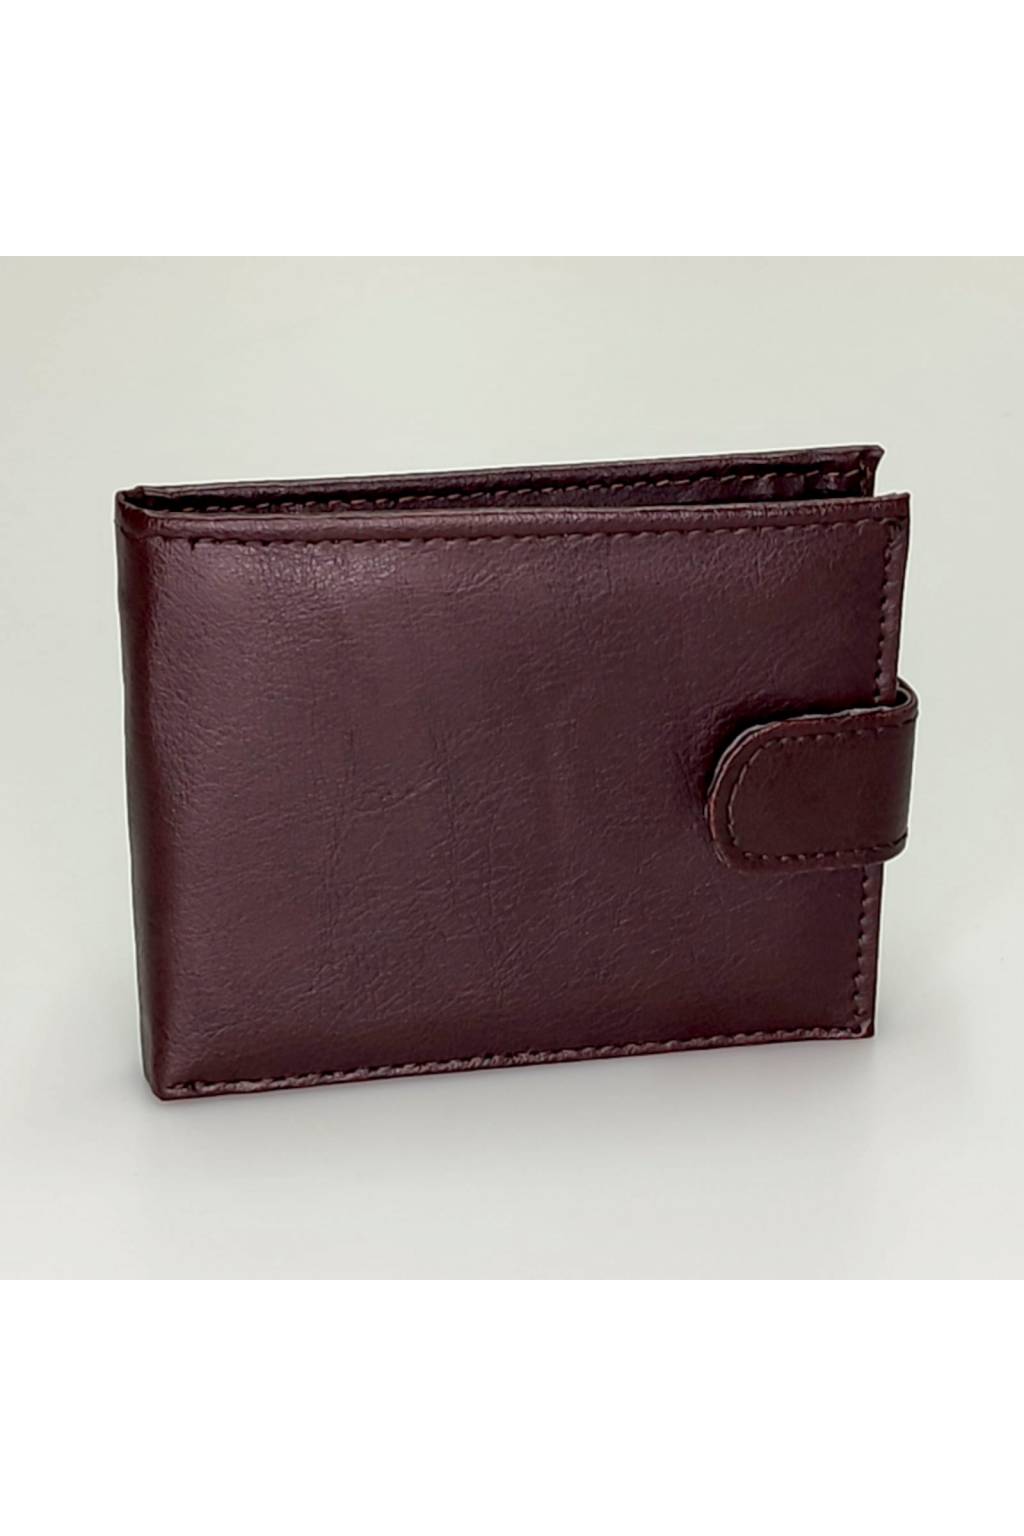 Pánska peňaženka ZY 21566 hnedá www.kabelky vypredaj (1)